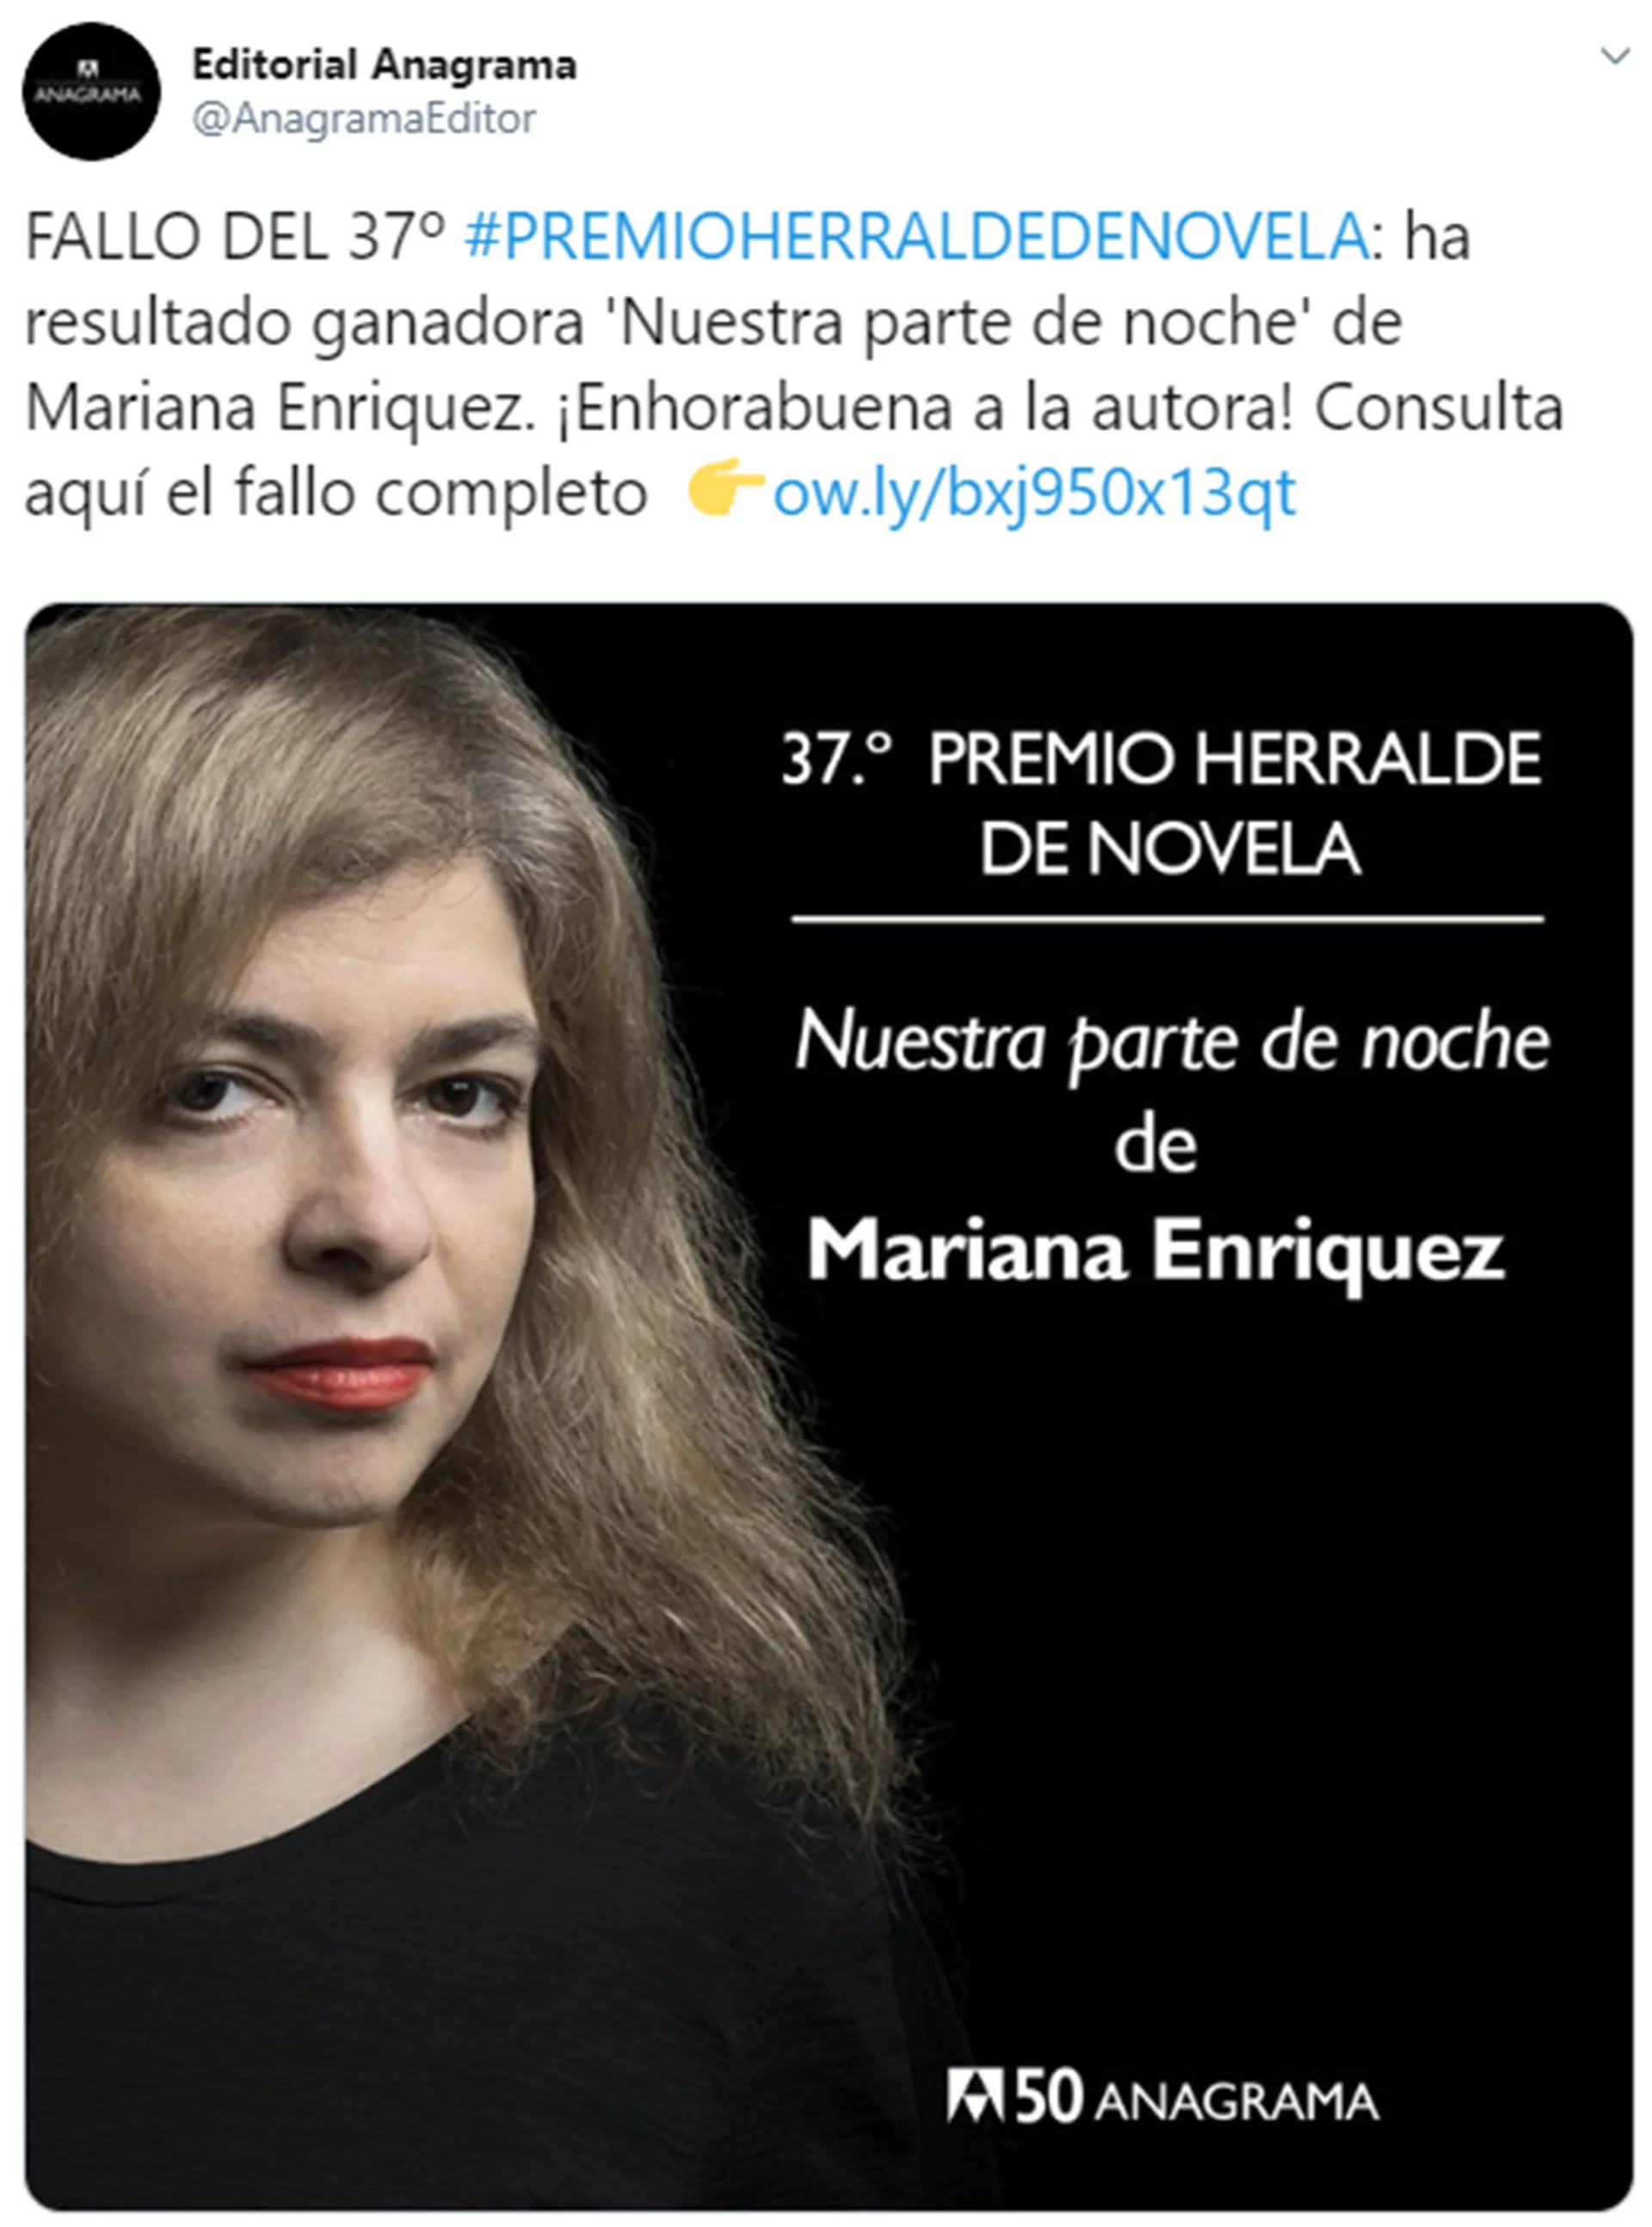 NUESTRA PARTE DE NOCHE - ENRIQUEZ MARIANA - EDITORIAL ANAGRAMA